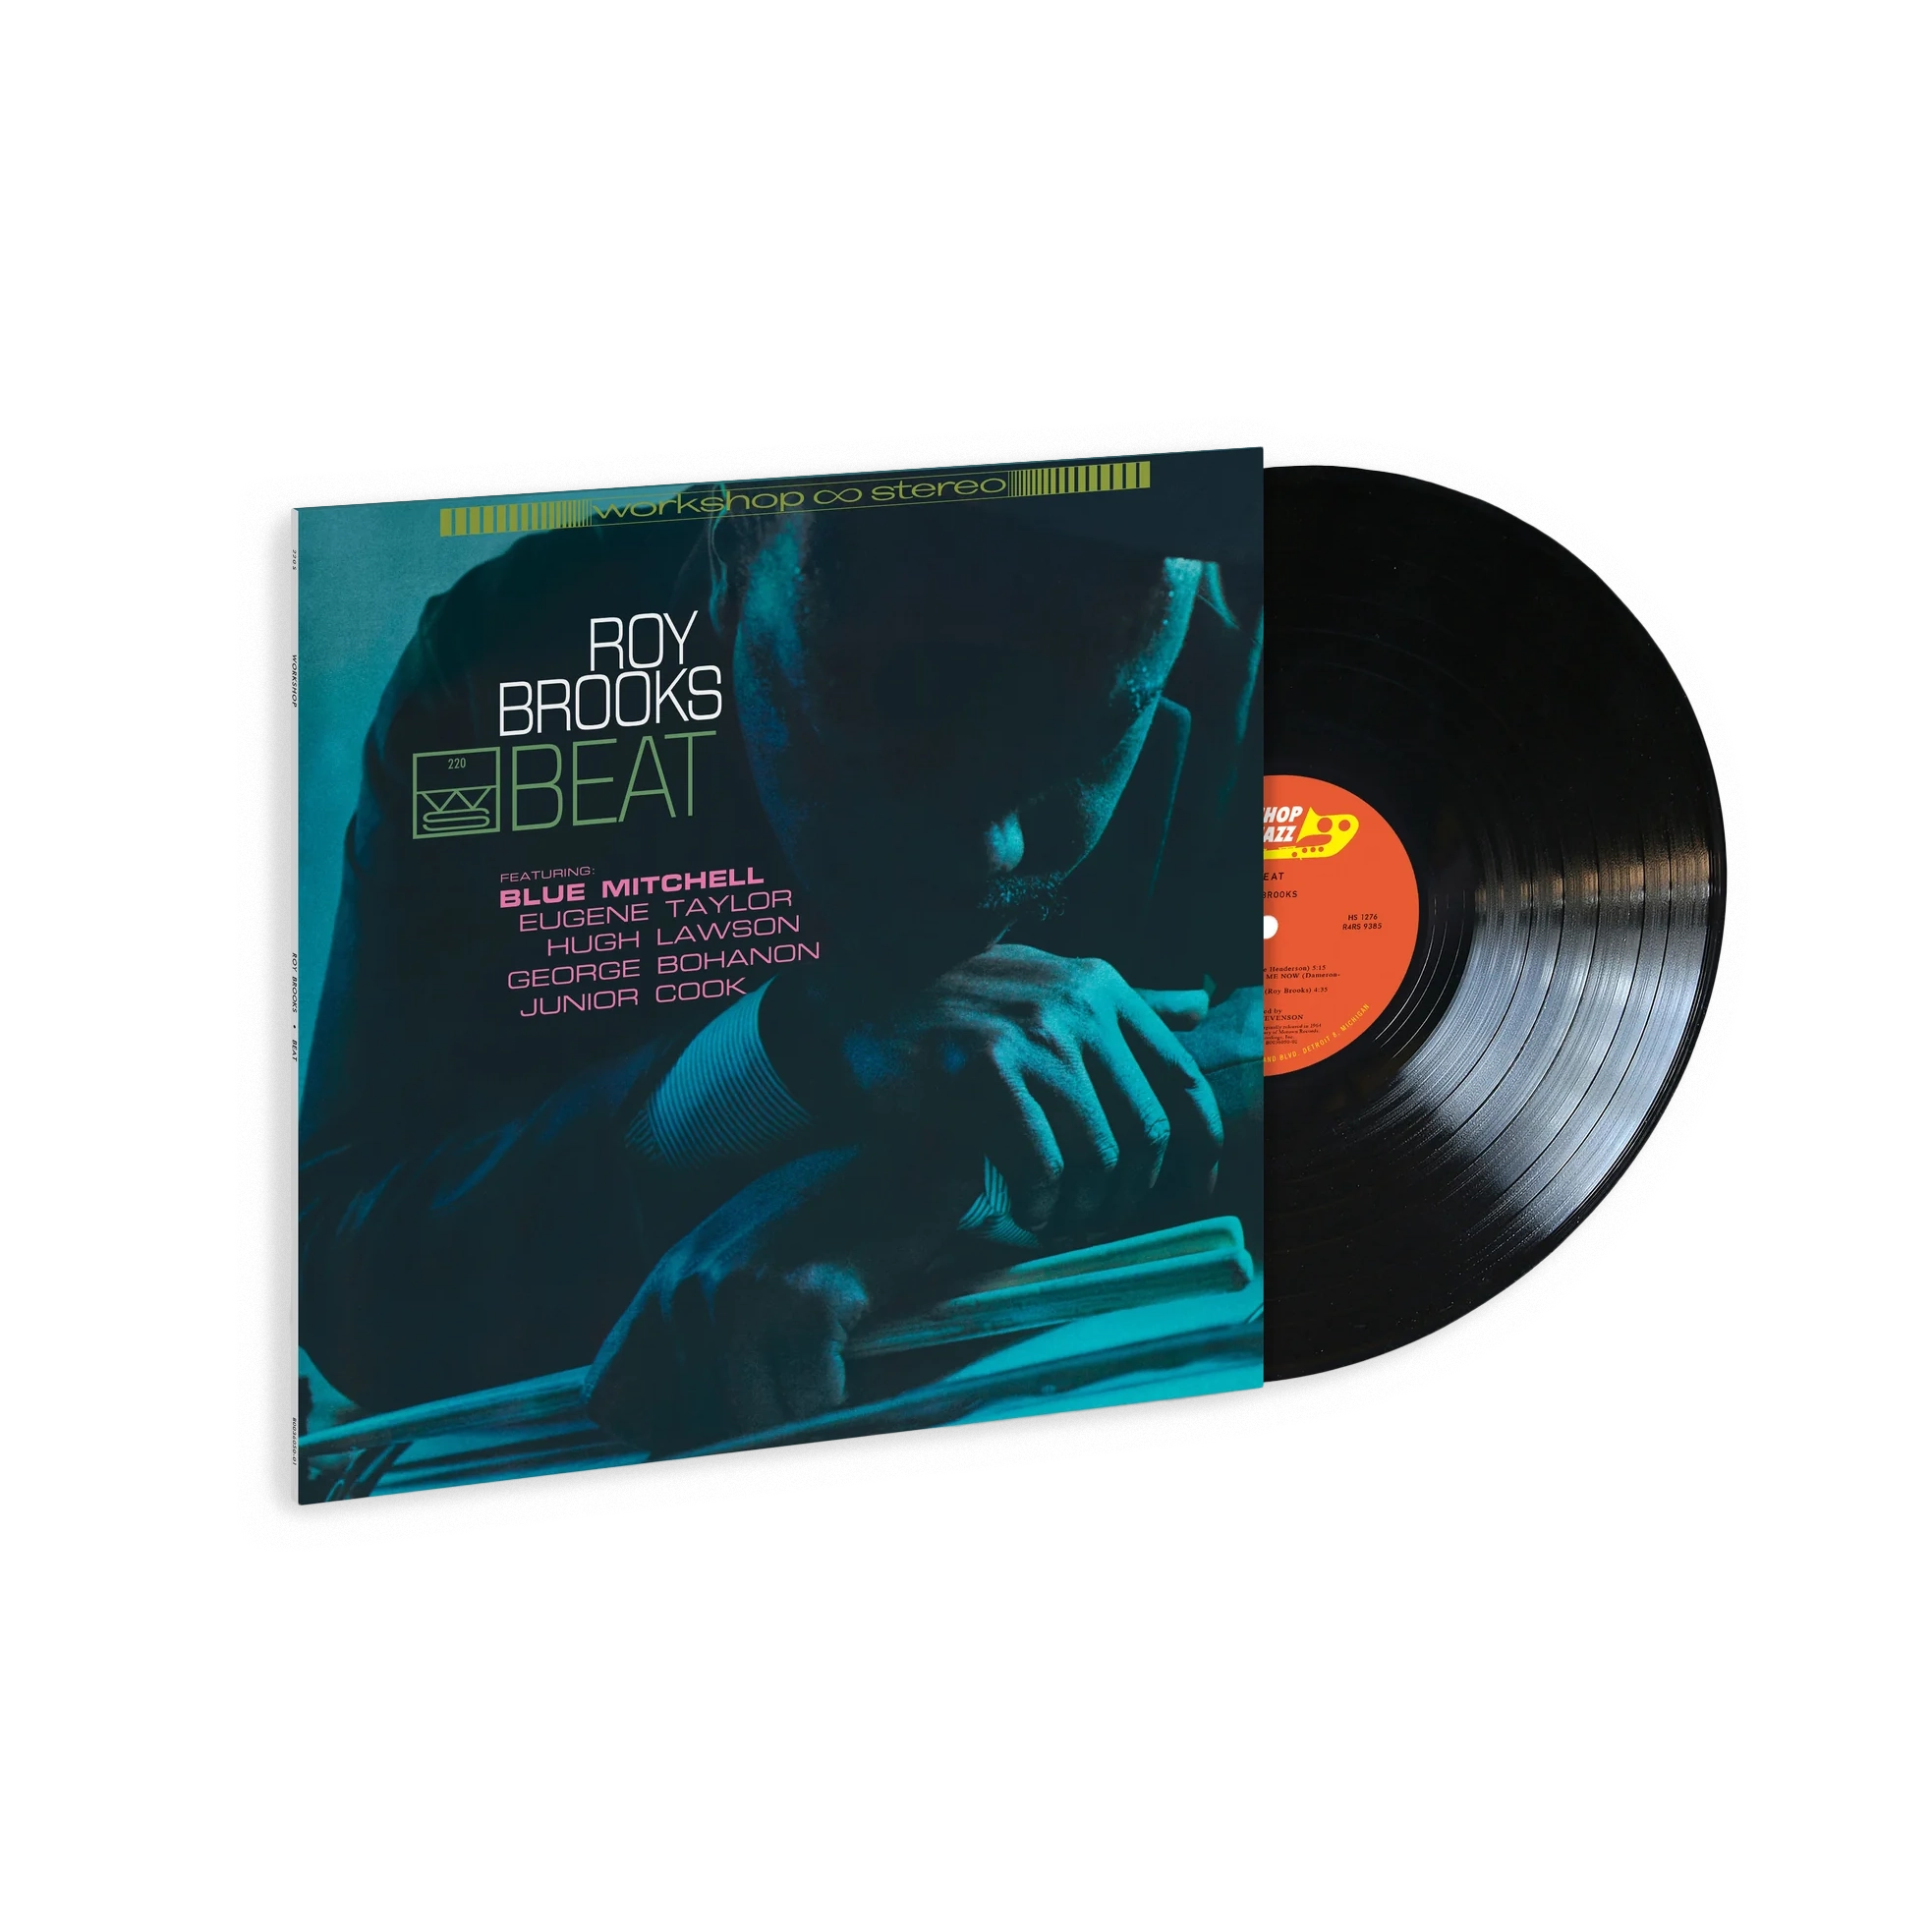 Roy Brooks - Beat (Verve By Request): Vinyl LP